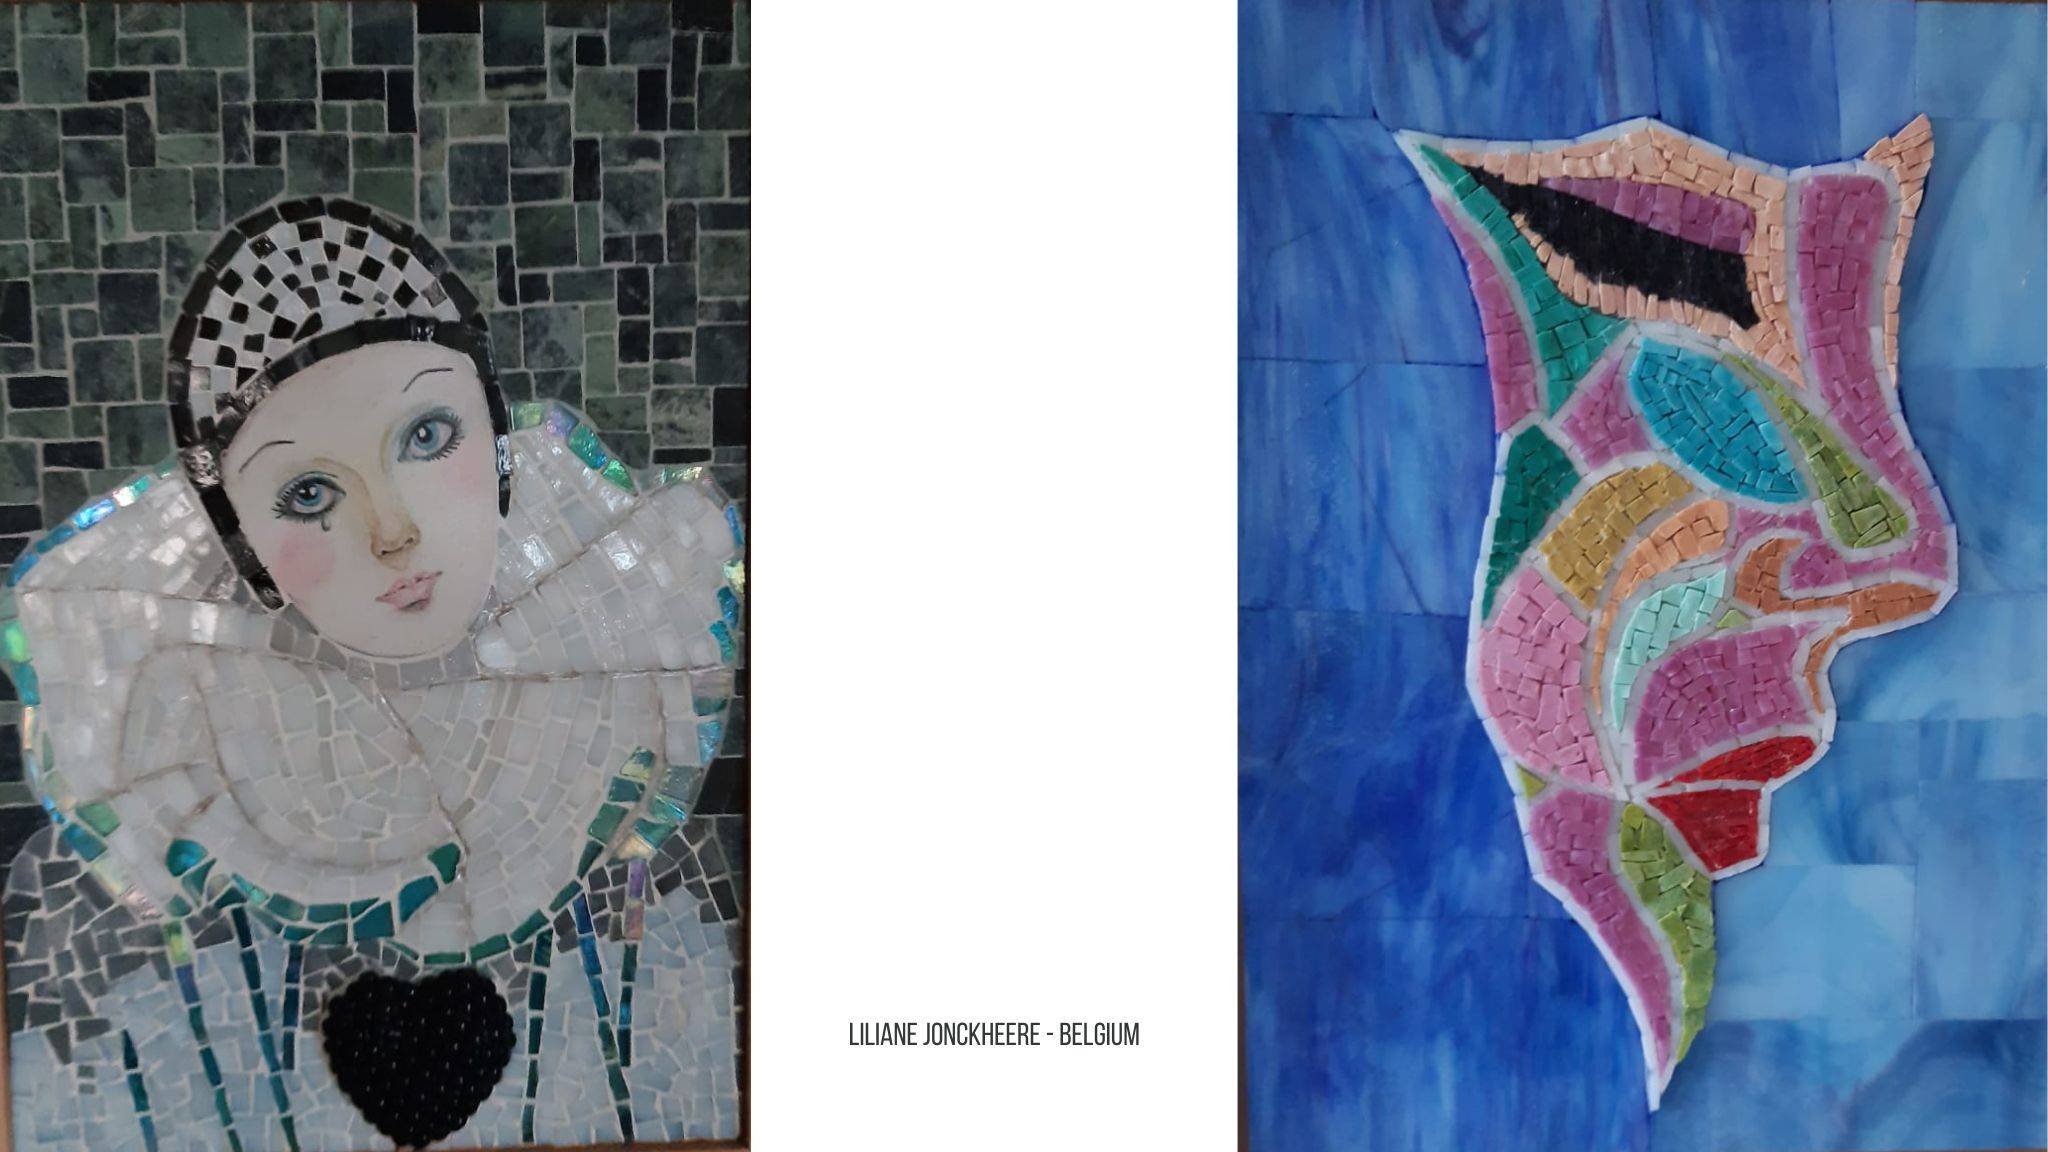 De linker foto: Een Pierrot schilderij gemaakt in mozaiek met glasmozaiek die op maat is geknipt. De Pierrot staat voor een groene achtergrond. De rechter foto: Een mozaiek van een silhouet van een gezicht gemaakt in Smalti met roze, blauw, groen en rode tinten. Achtergrond is gemaakt met blauwe Glasscherven.